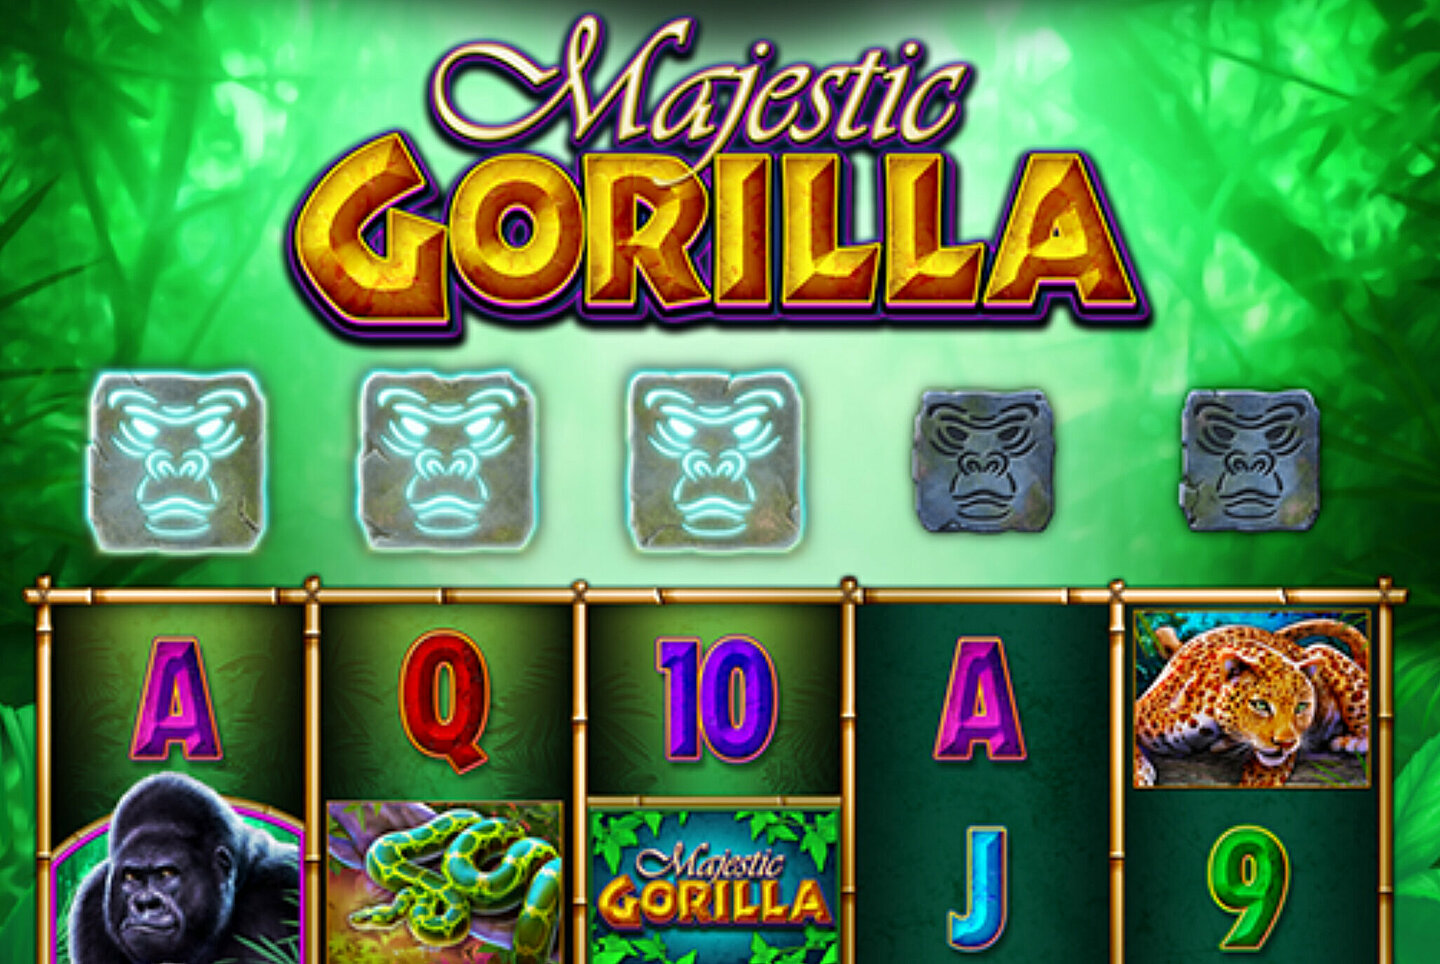 Fort Knox Jackpot Spiel Majestic Gorilla